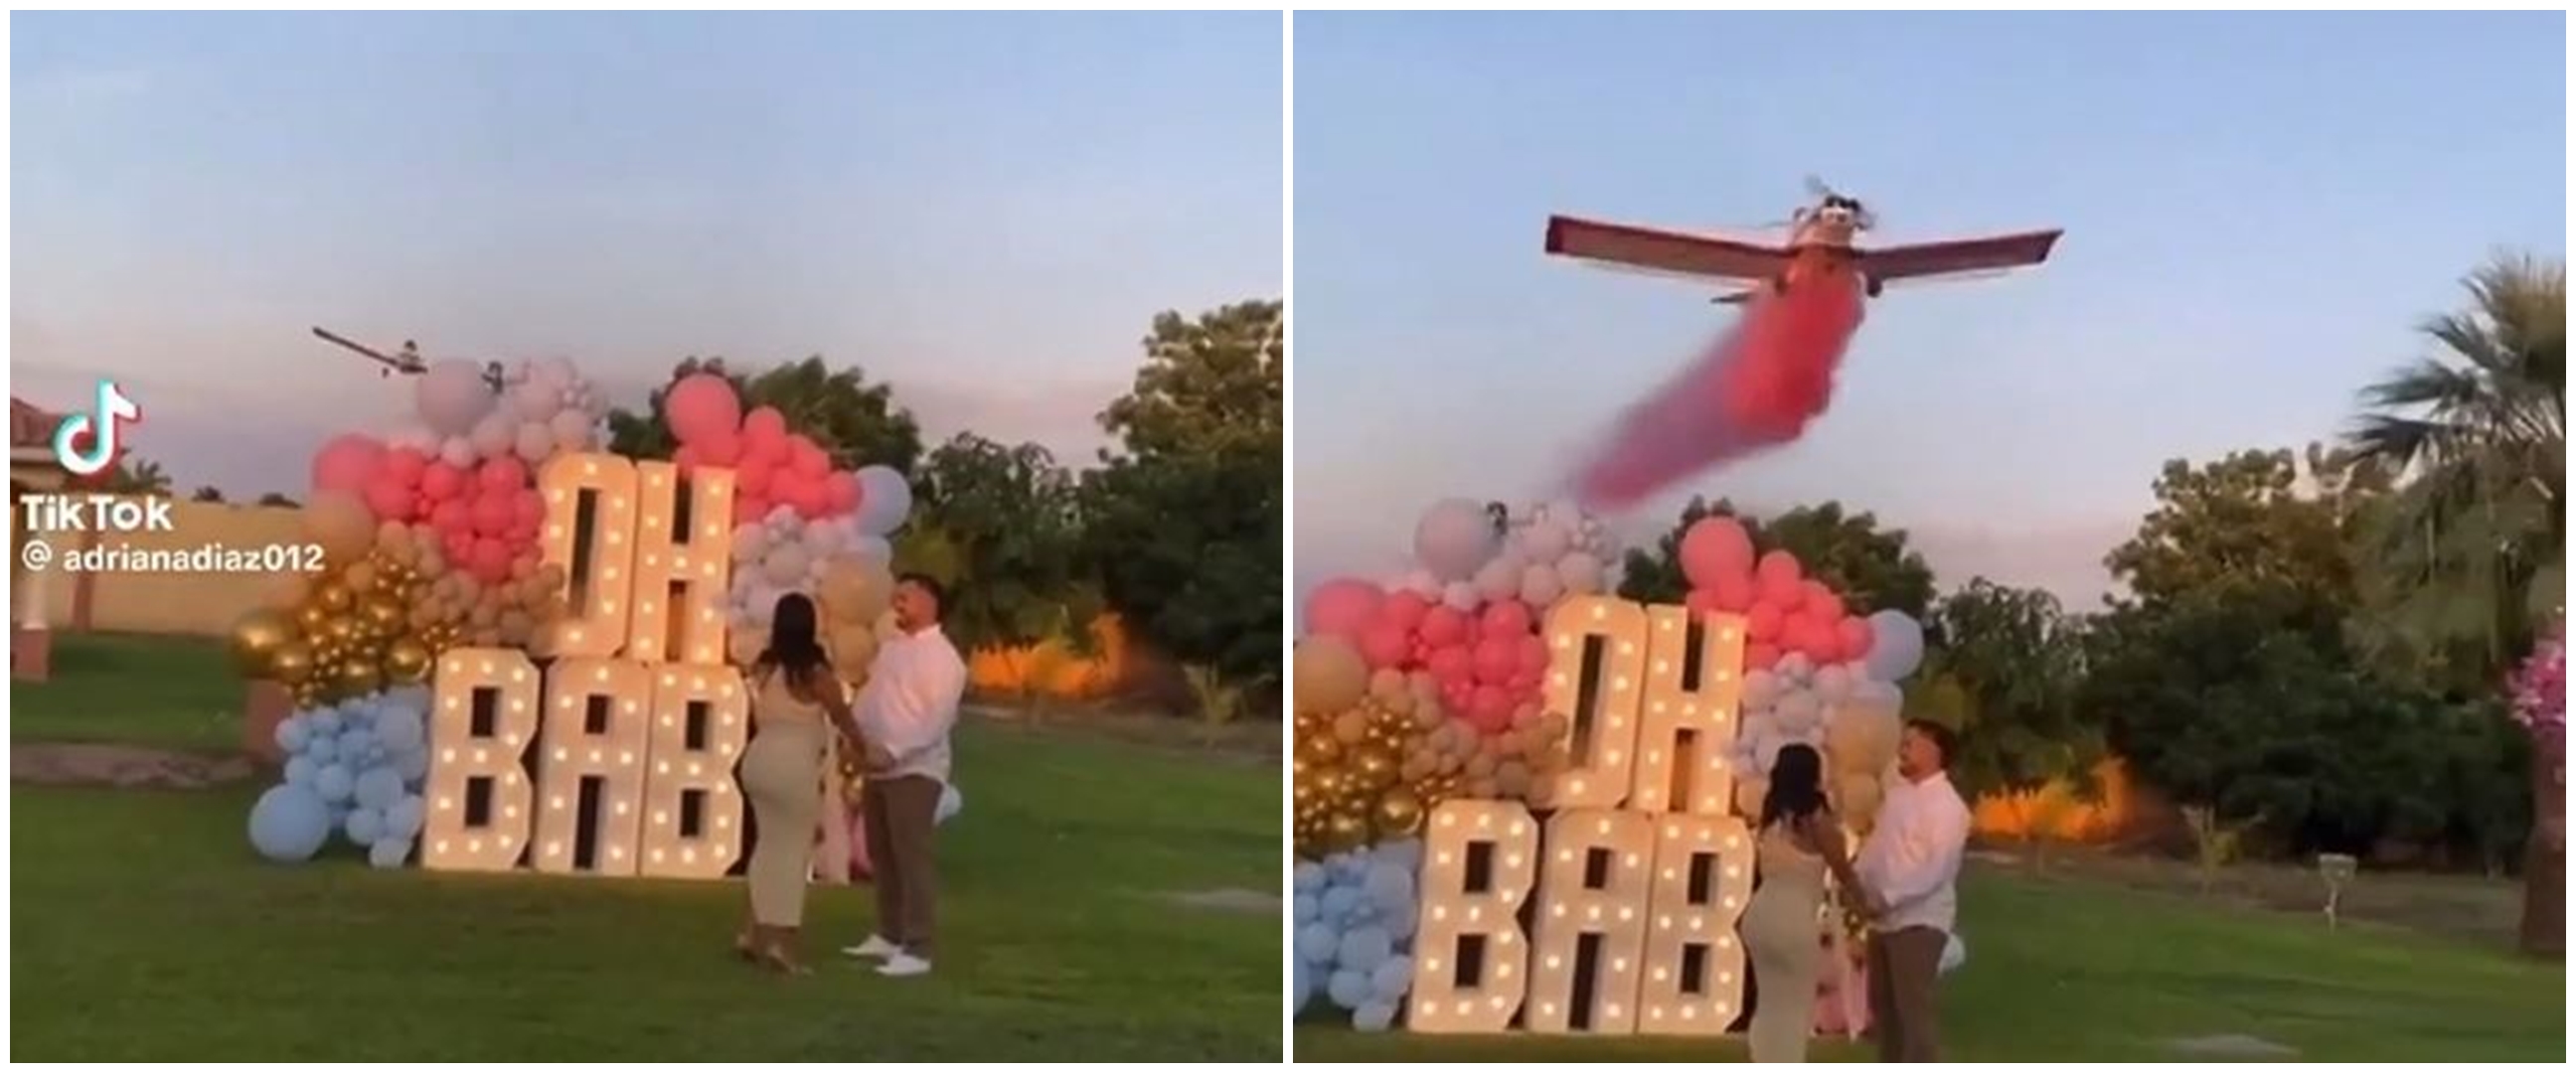 Romantis berujung petaka, momen pesawat terjatuh saat atraksi di pesta gender reveal ini ngeri abis